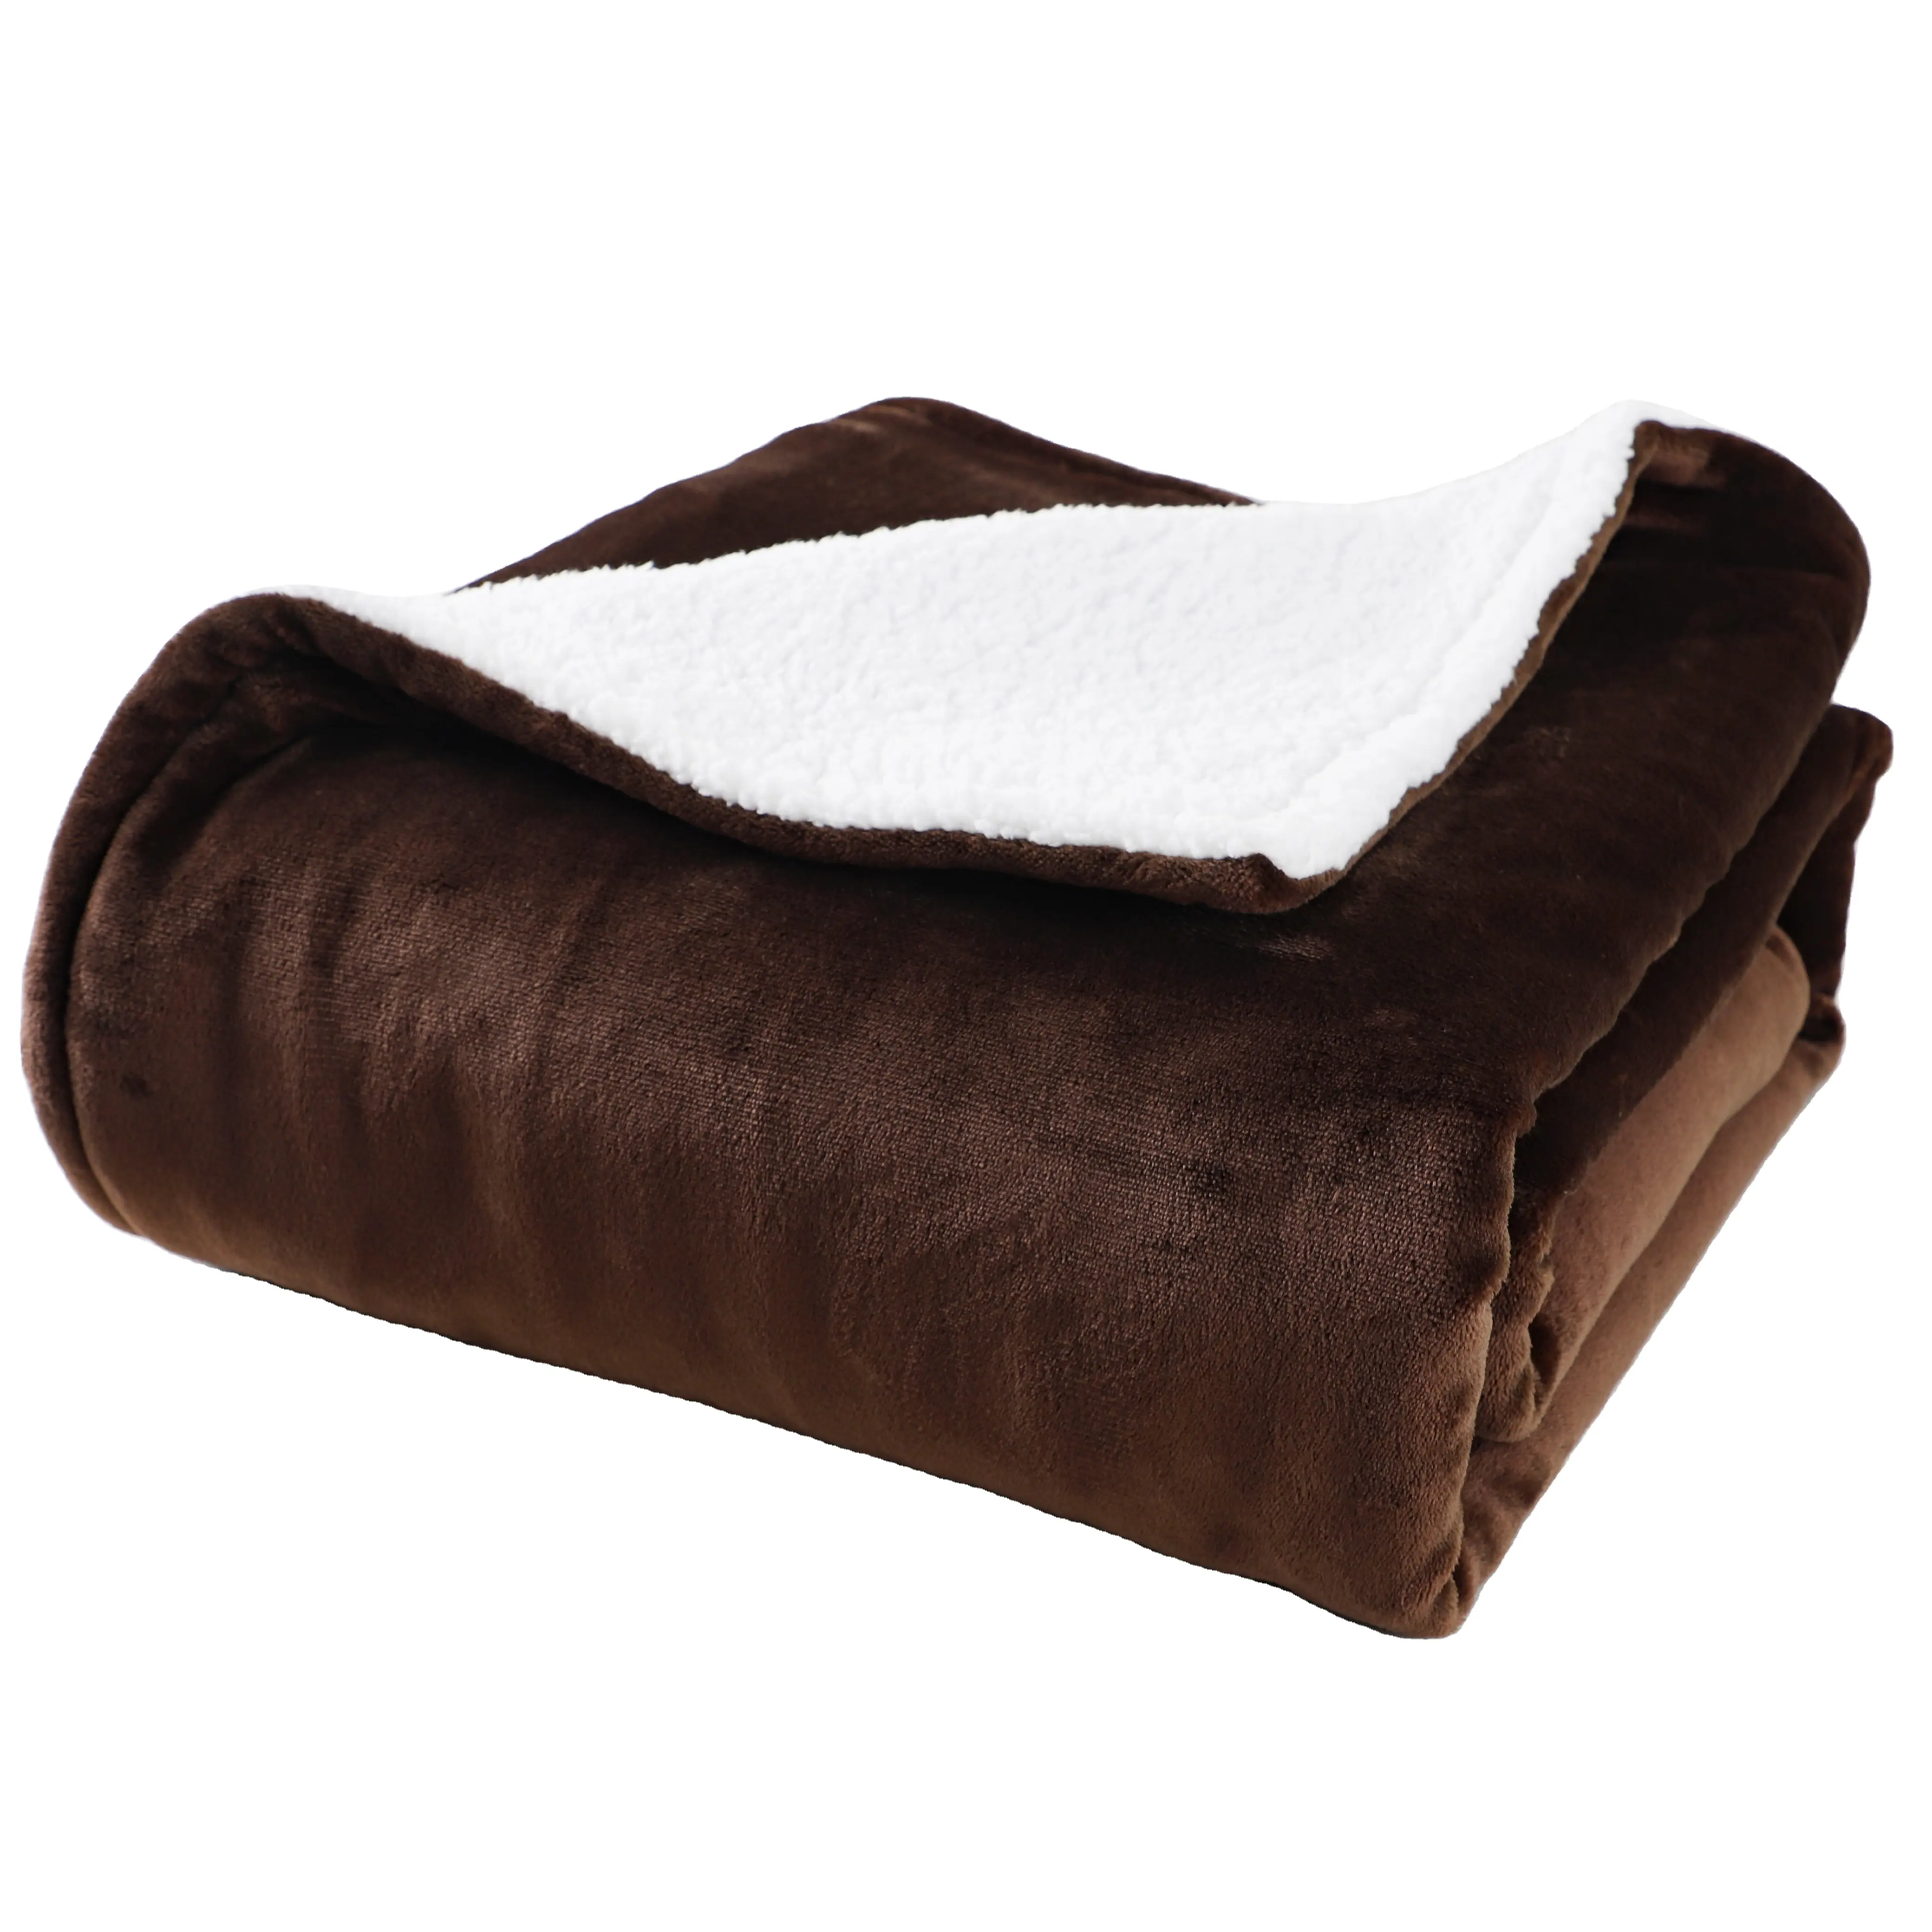 Selimut listrik pemanas, selimut listrik hangat, selimut listrik dapat dipakai untuk sofa